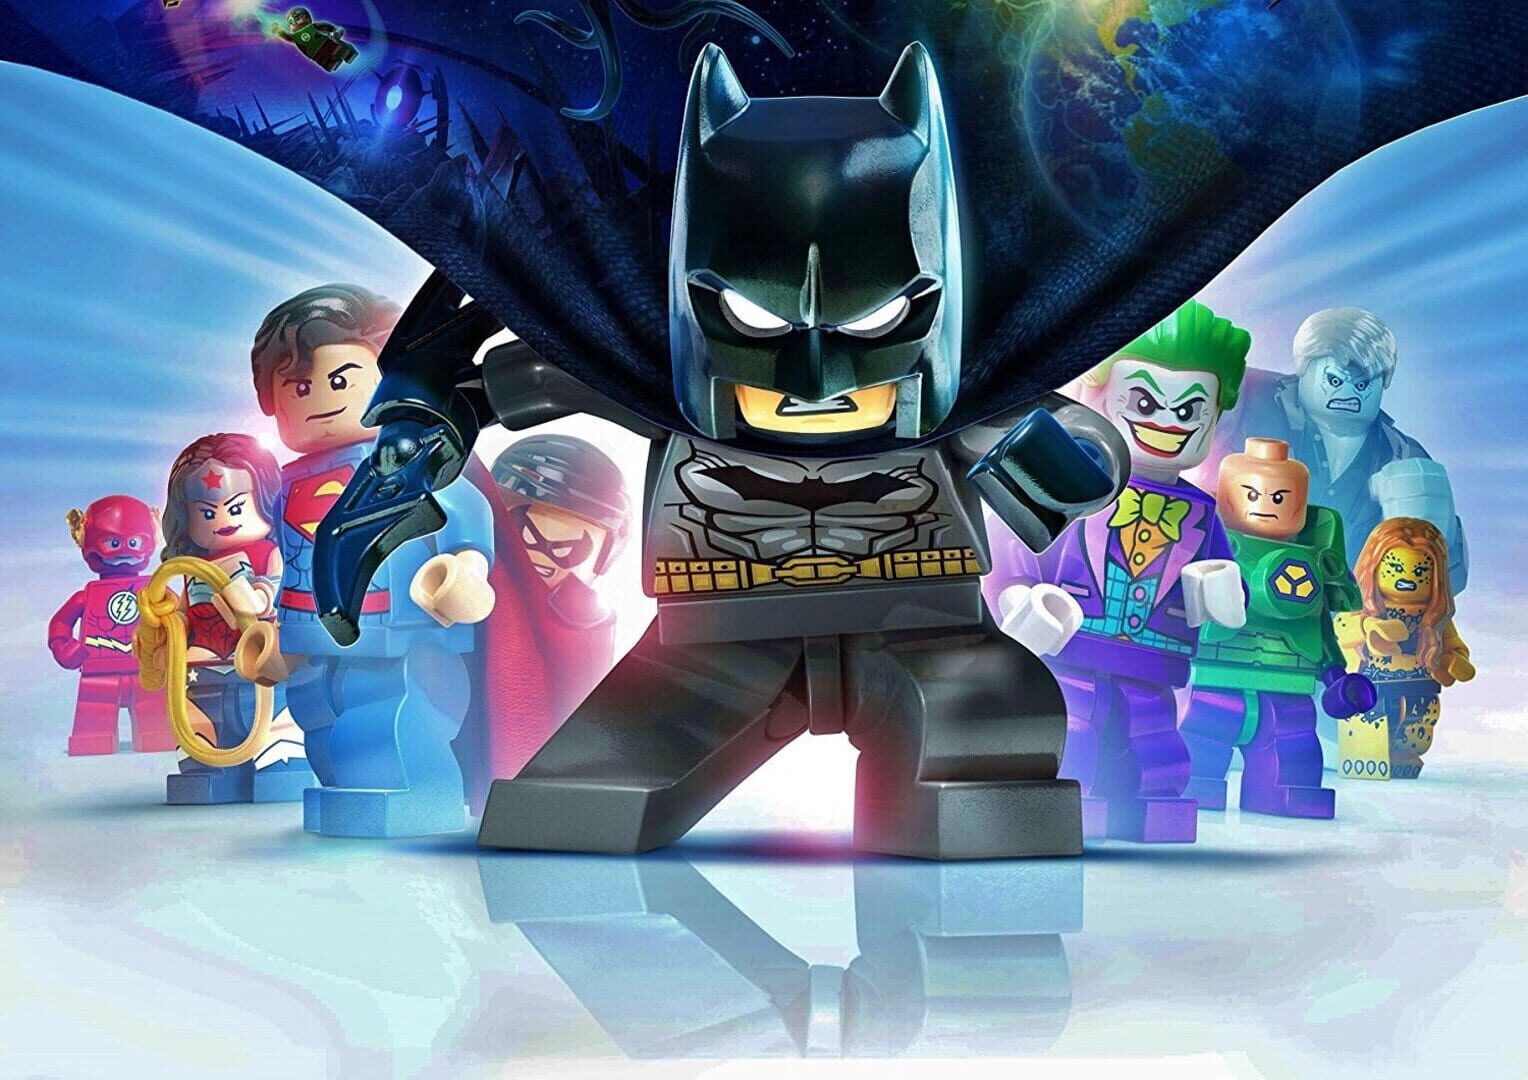 Artwork for LEGO Batman 3: Beyond Gotham